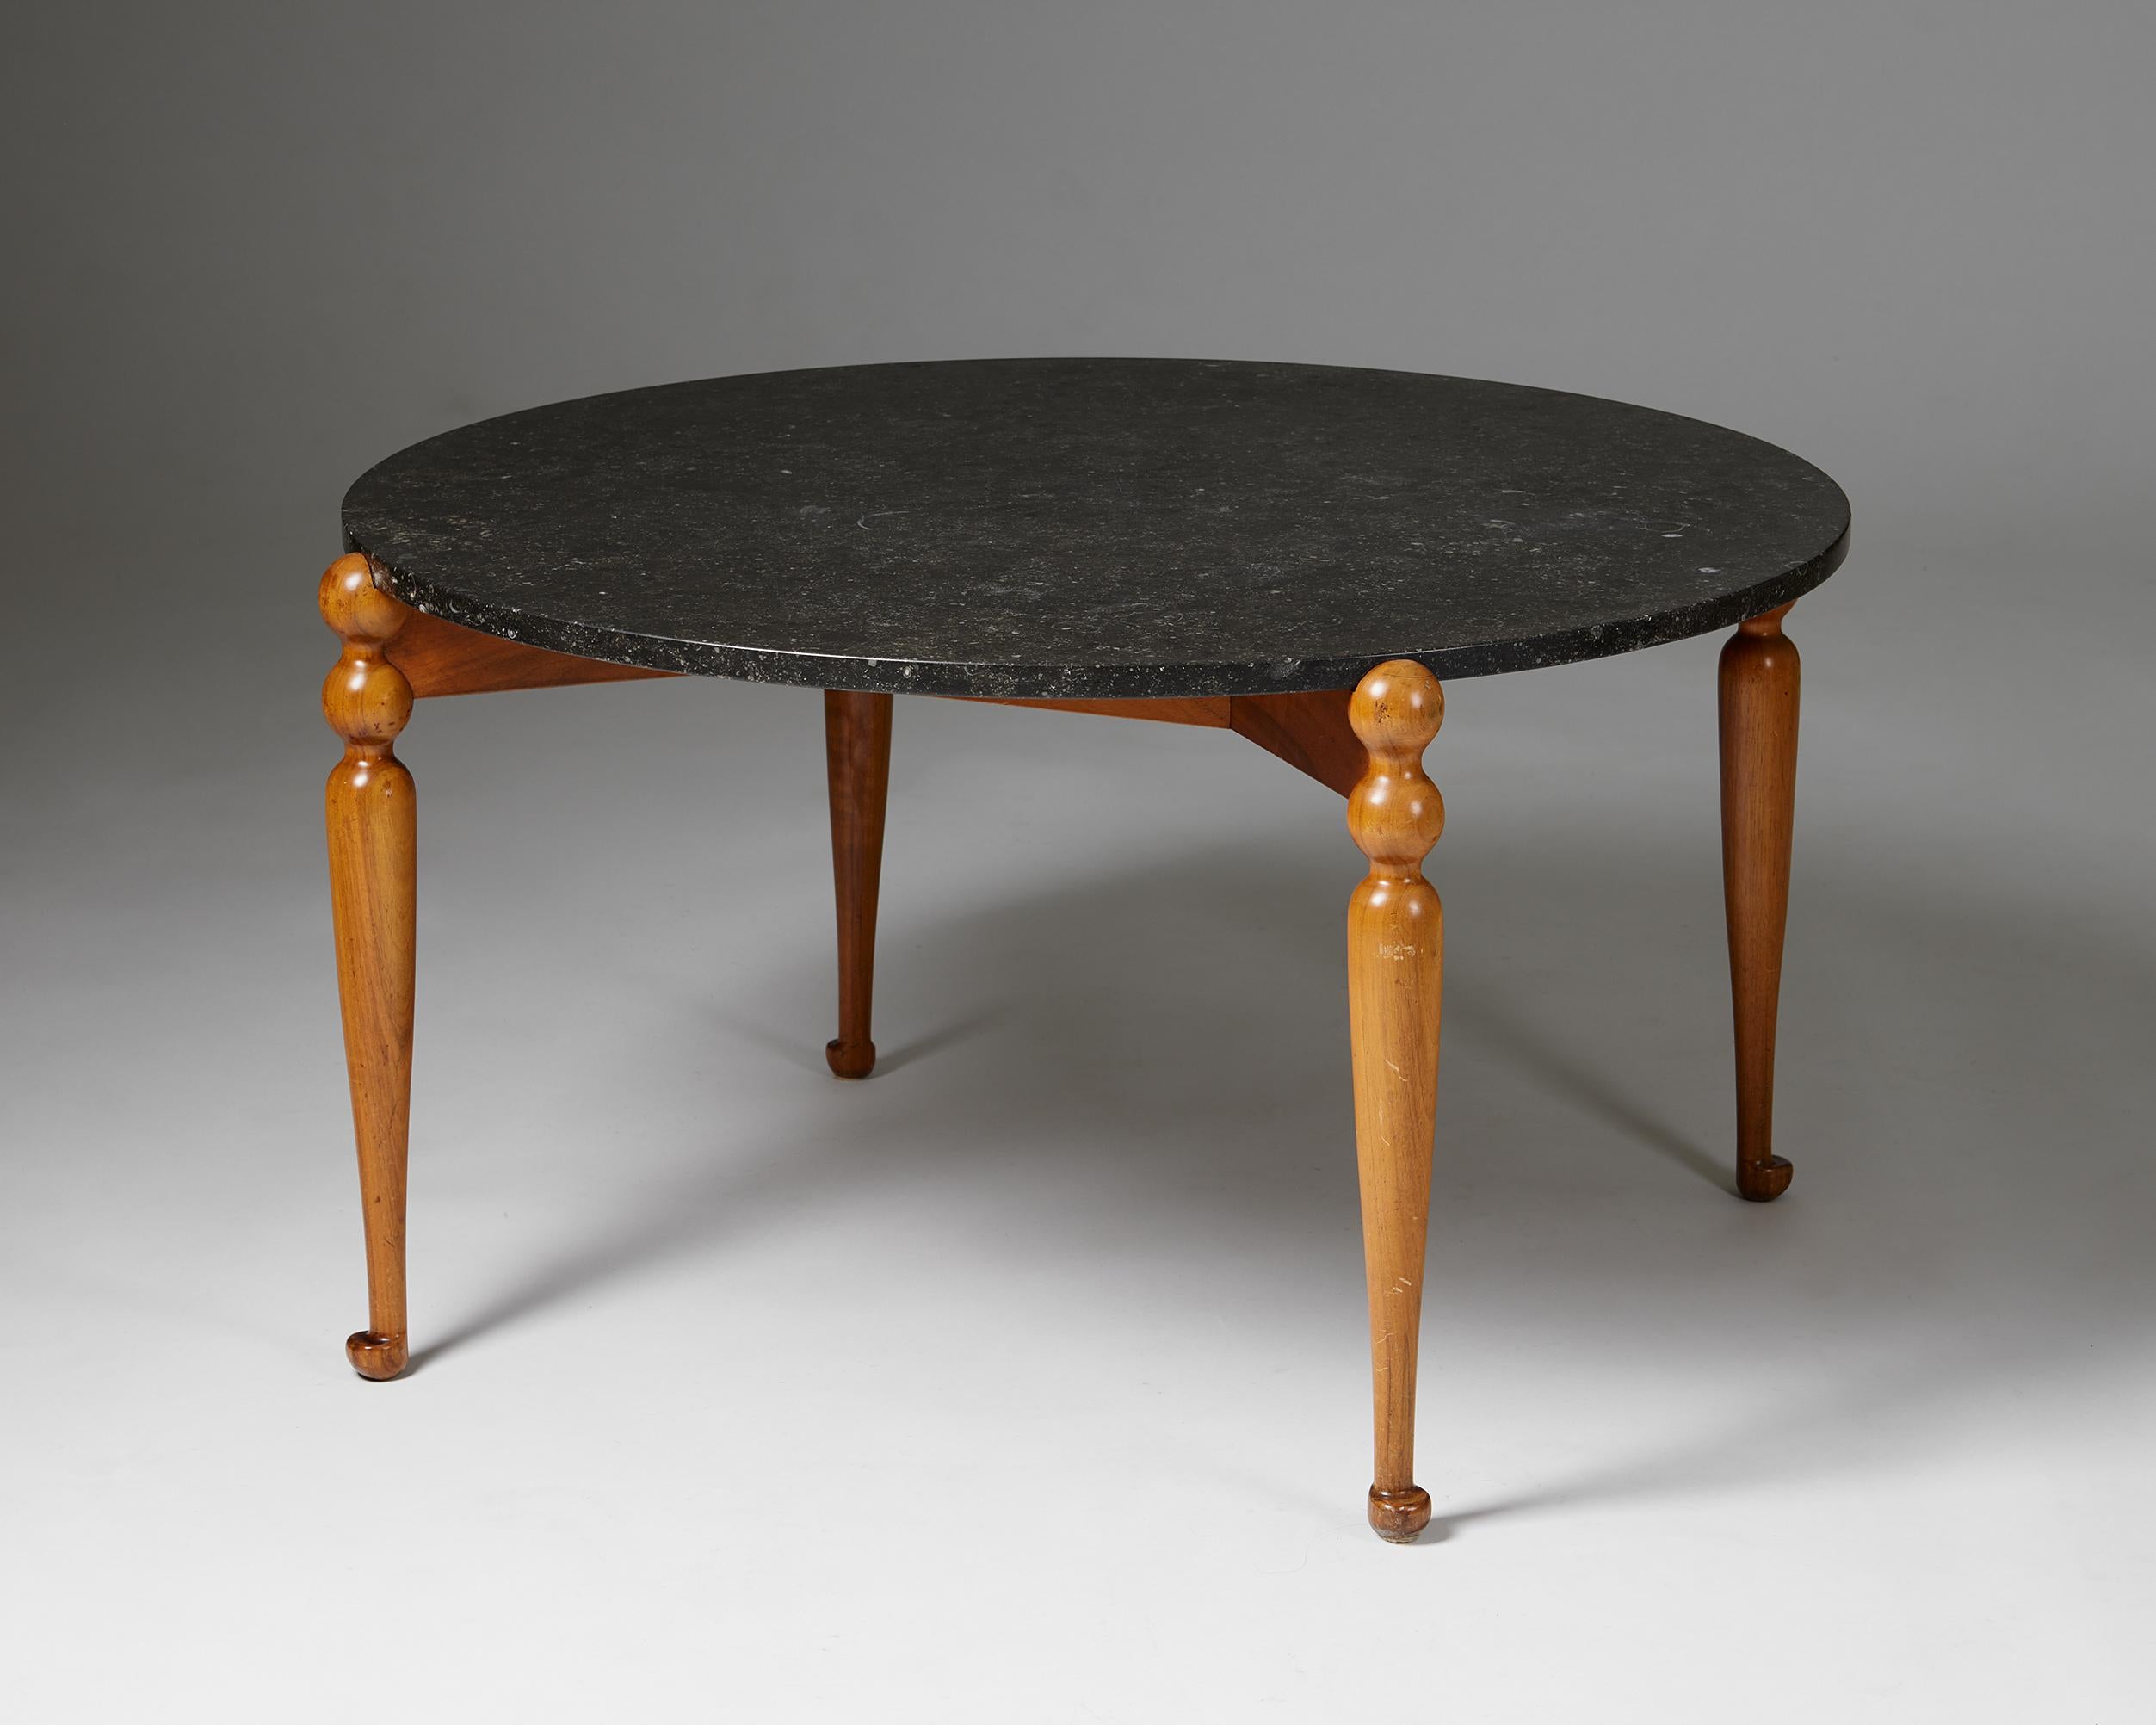 Table d'appoint modèle 2168 conçue par Josef Franks pour Svenskt Tenn,
Suède. 1950s.

Noyer et marbre.

La table d'appoint 